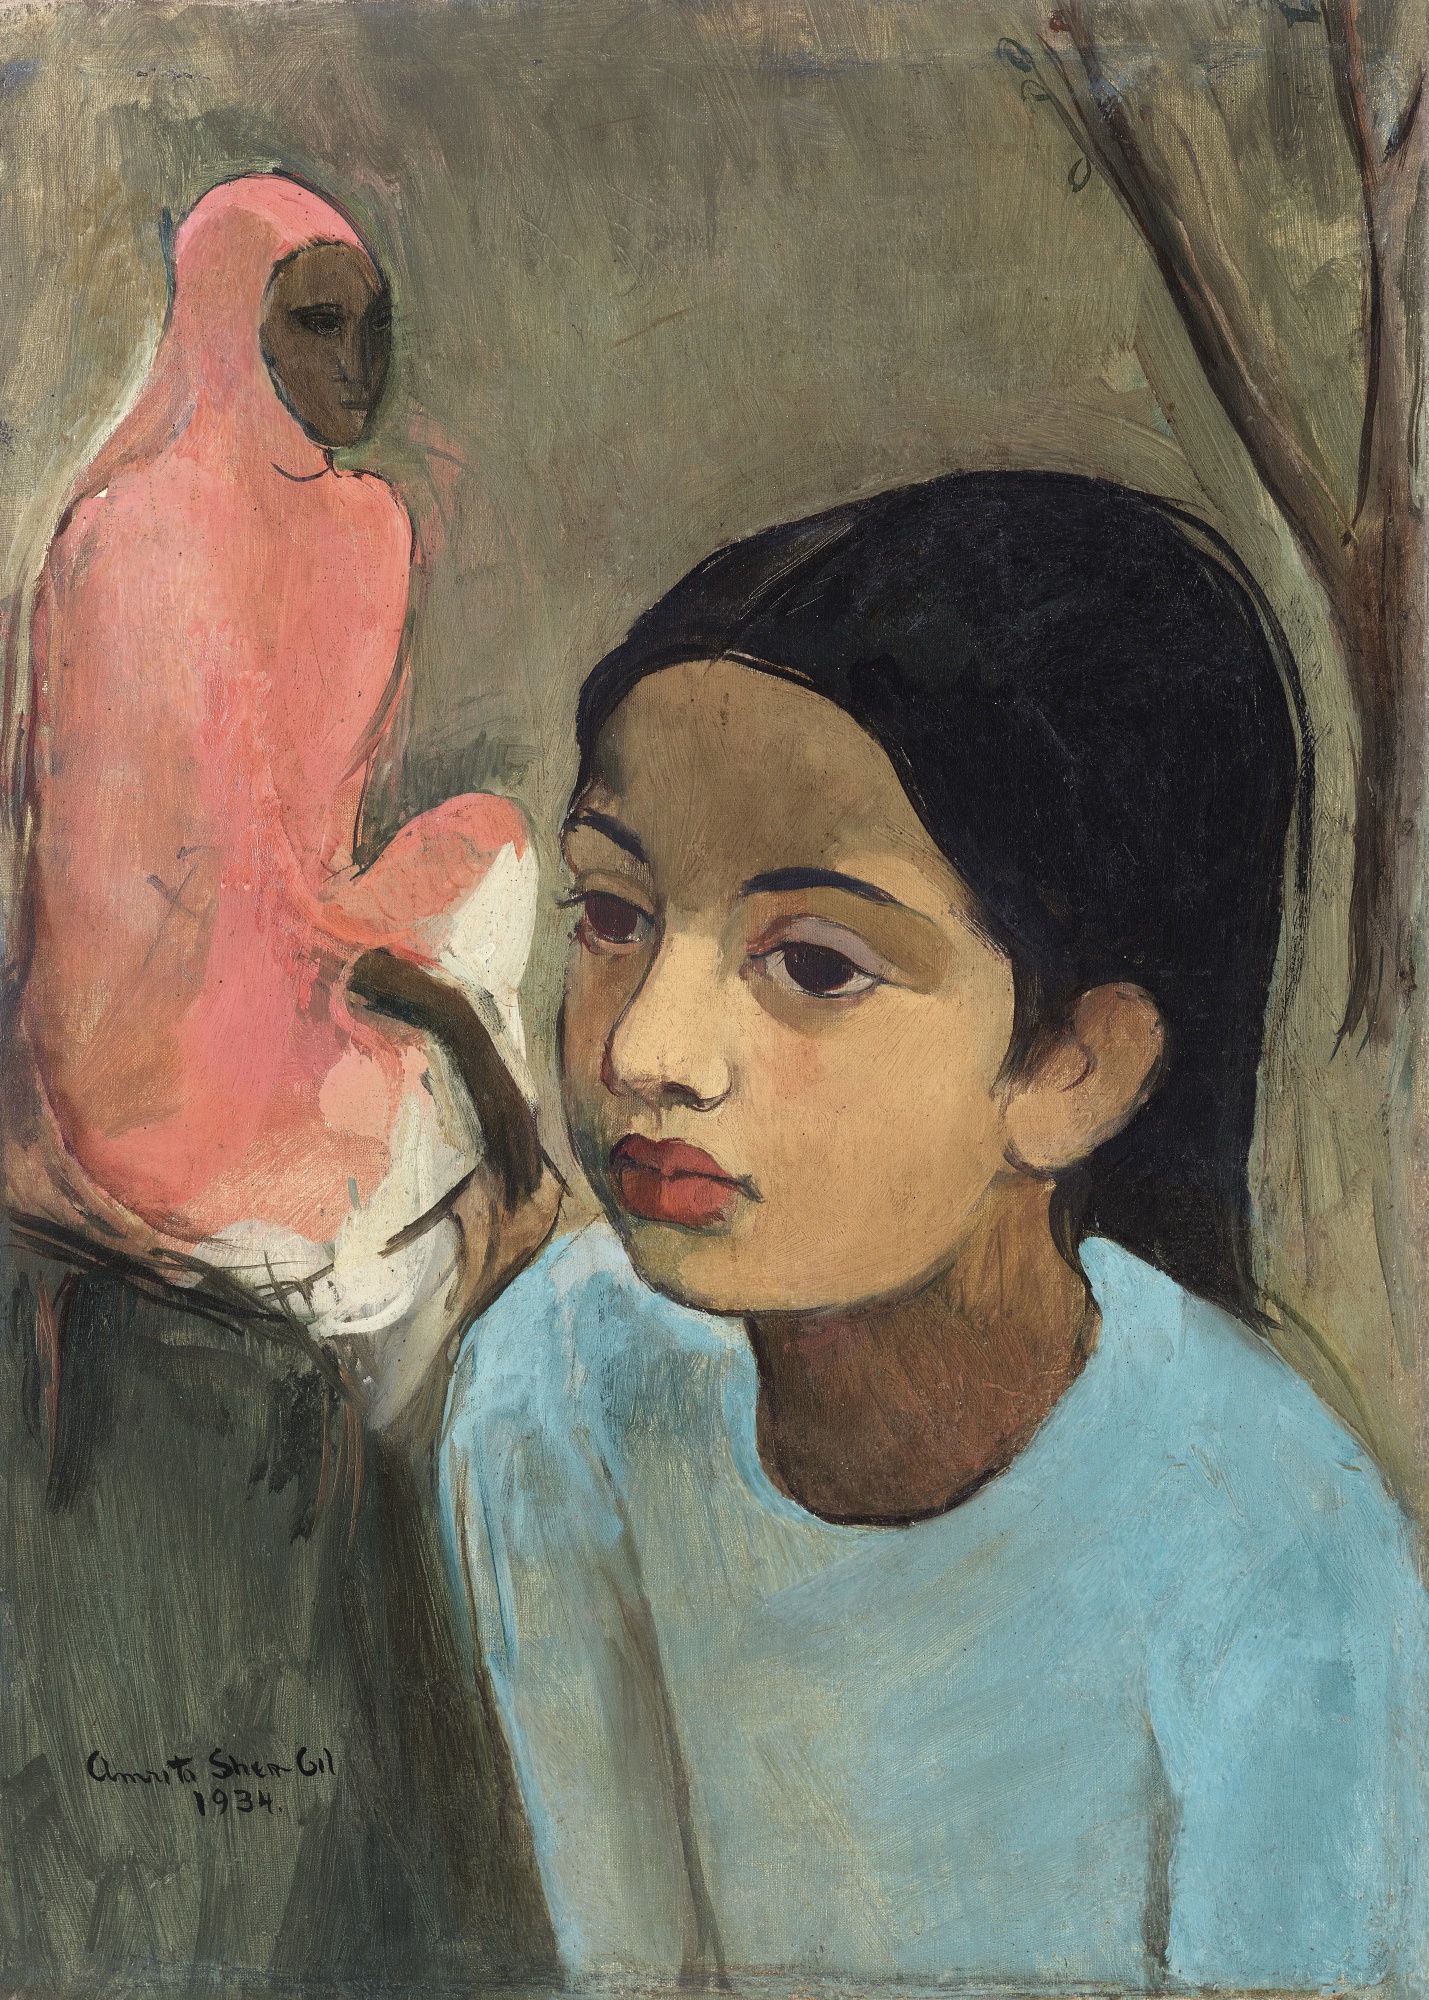 La niña de azul by Amrita Sher-Gil - 1934 - 48 x 40.6 cm Colección privada